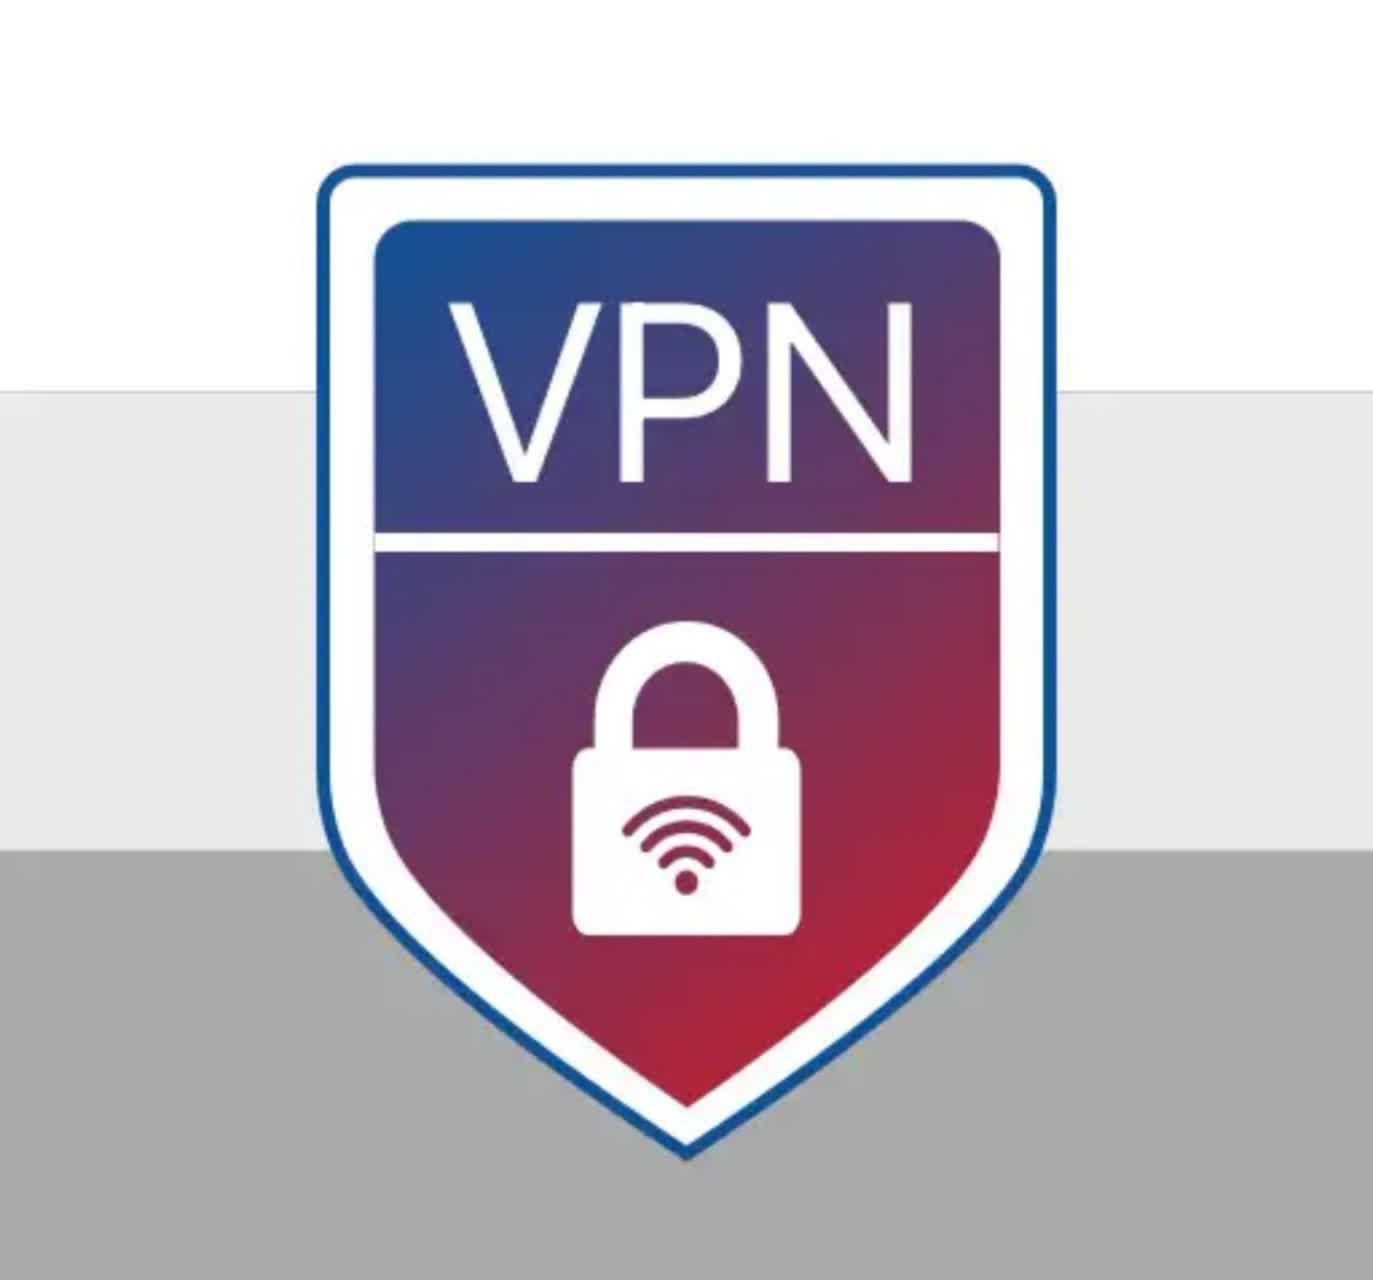 دانلود فیلتر شکن Vpn servers in Russia نسخه جدید